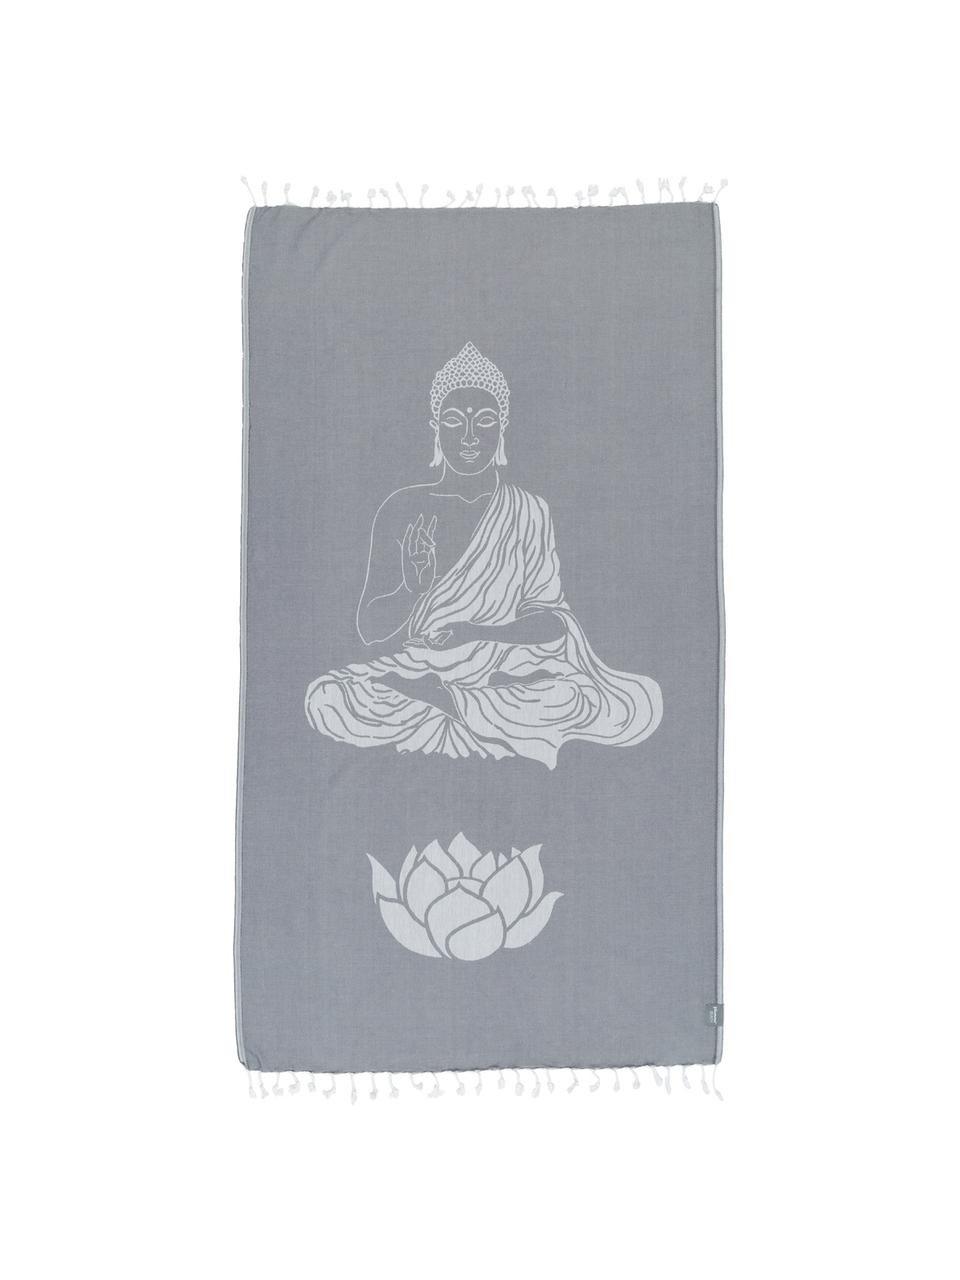 Hamamtuch Buddha, 100% Baumwolle, leichte Qualität, 180 g/m², Grau, Gebrochenes Weiss, 90 x 180 cm